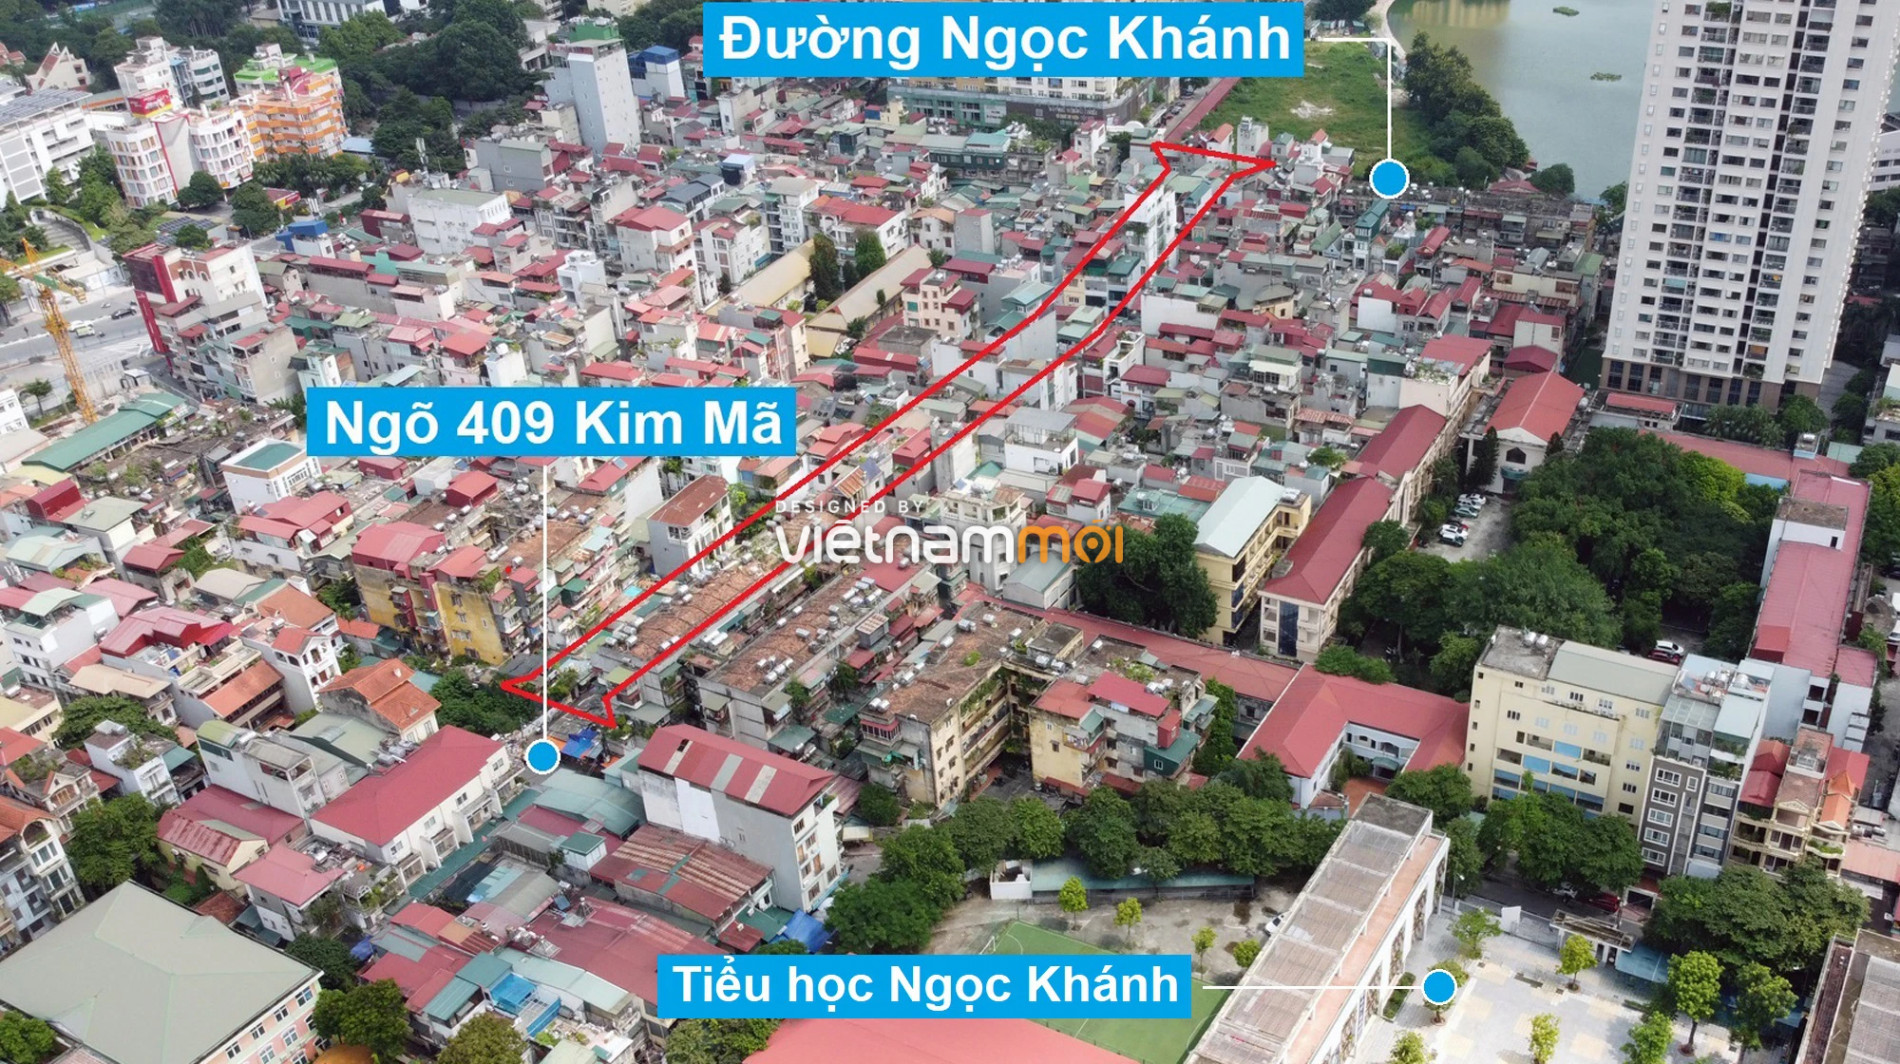 Những khu đất sắp thu hồi để mở đường ở phường Ngọc Khánh, Ba Đình, Hà Nội (phần 4) - Ảnh 6.